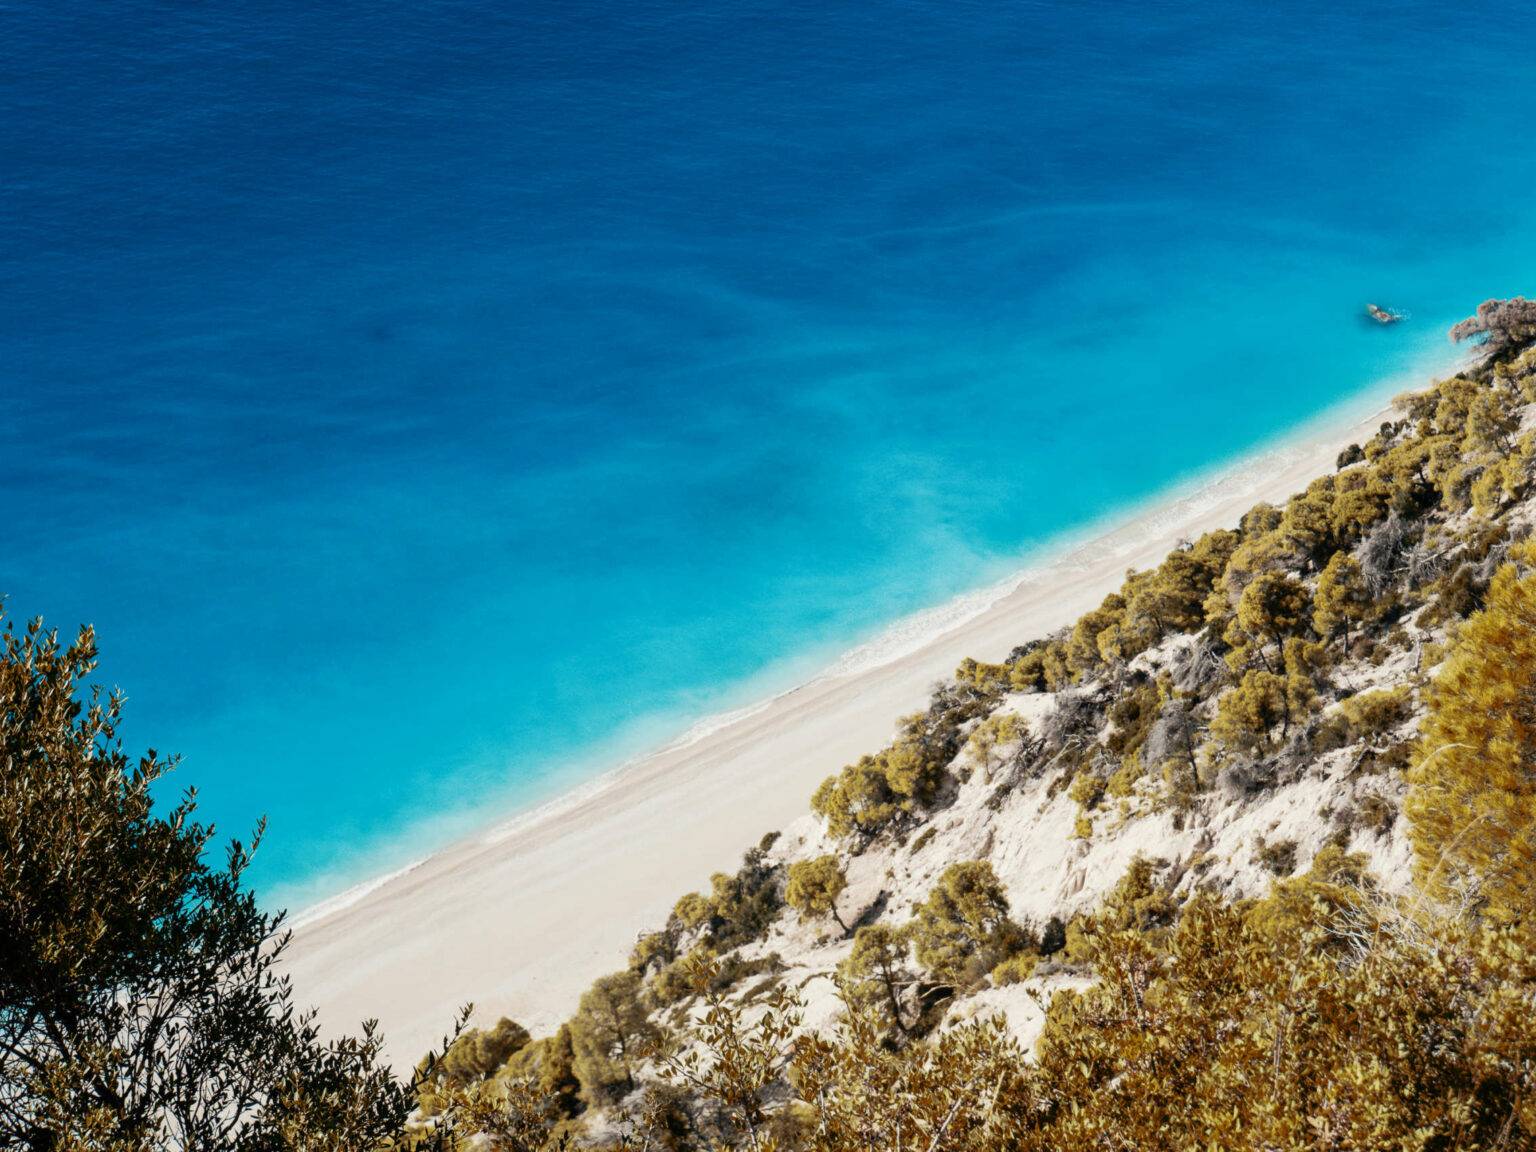 Von oben betrachtet schimmert das Wasser um die griechische Insel Lefkada in einem noch intensiveren Blau - ein Traum für jeden Urlauber.